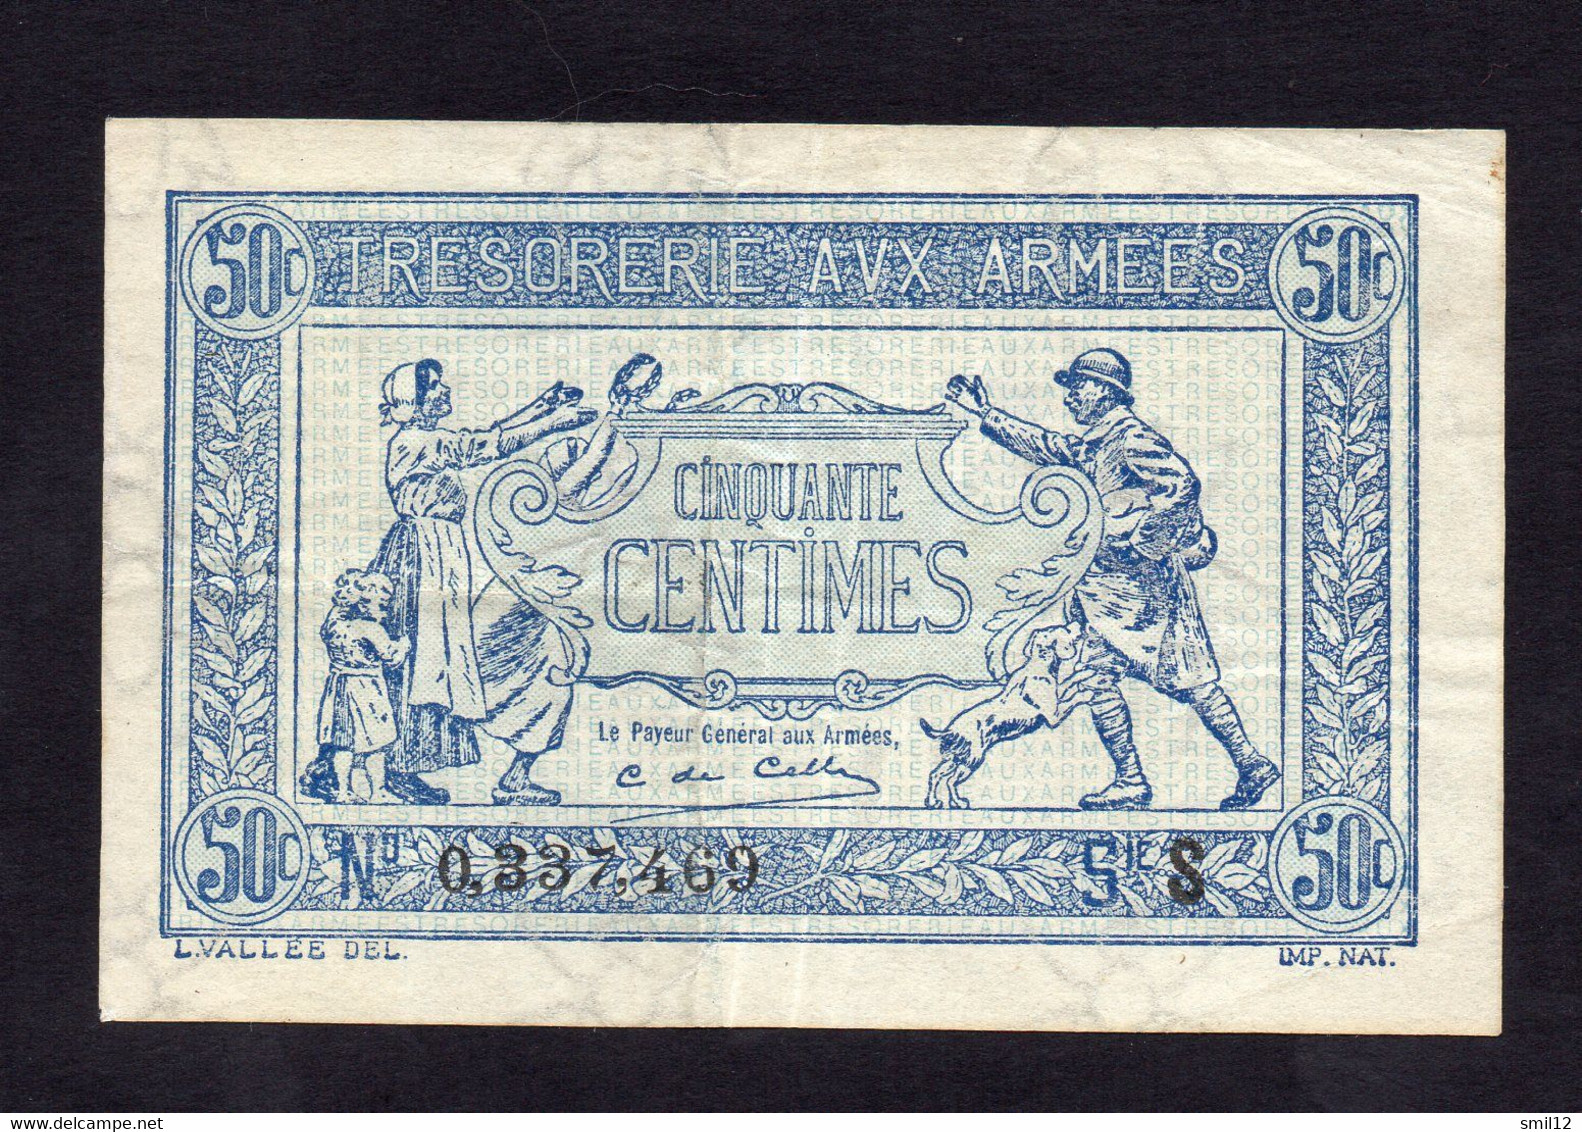 Trésorerie Aux Armées - 50 Centimes - Lettre S (2) - 1917-1919 Army Treasury